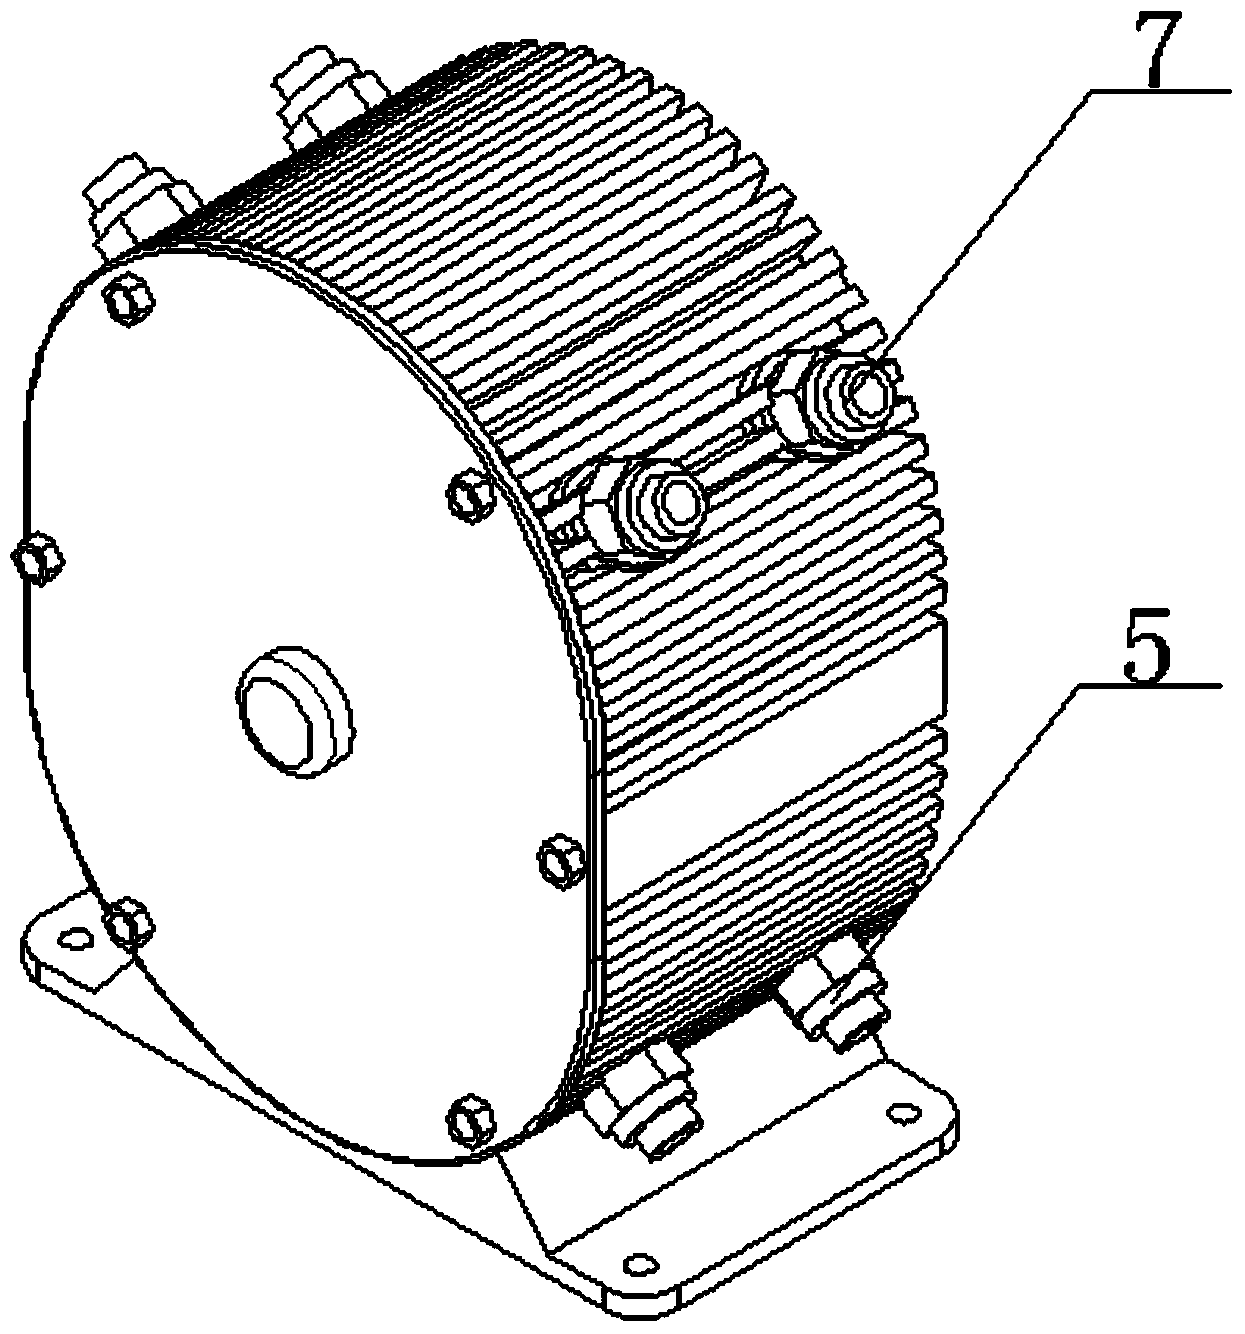 Novel duplex triangle rotor hydraulic pump